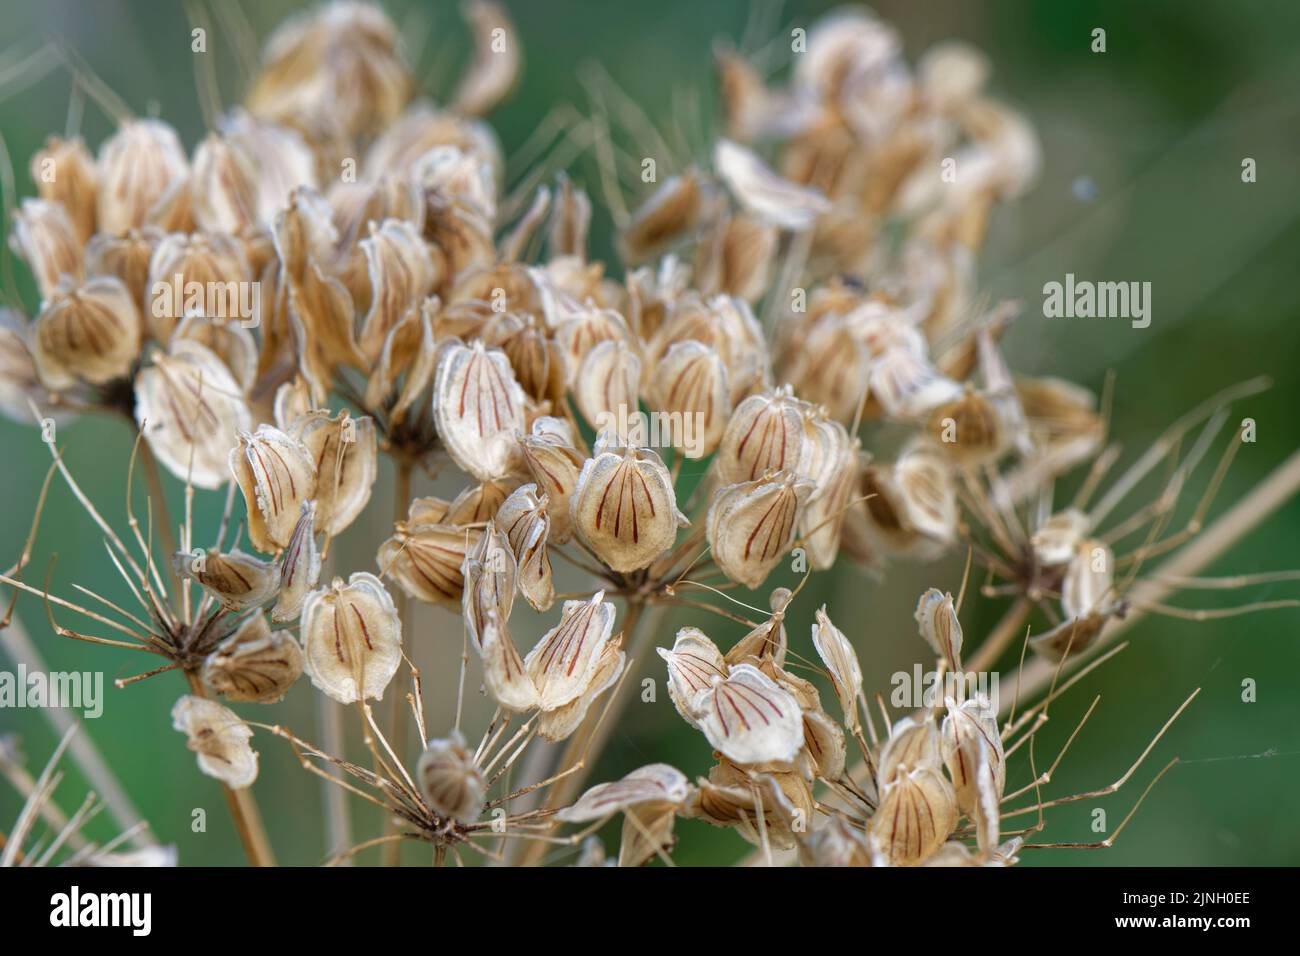 Testa di zizzone comune (Heracleum sphondylium) con semi alati, striati, commestibili, Somerset, Regno Unito, Agosto. Foto Stock